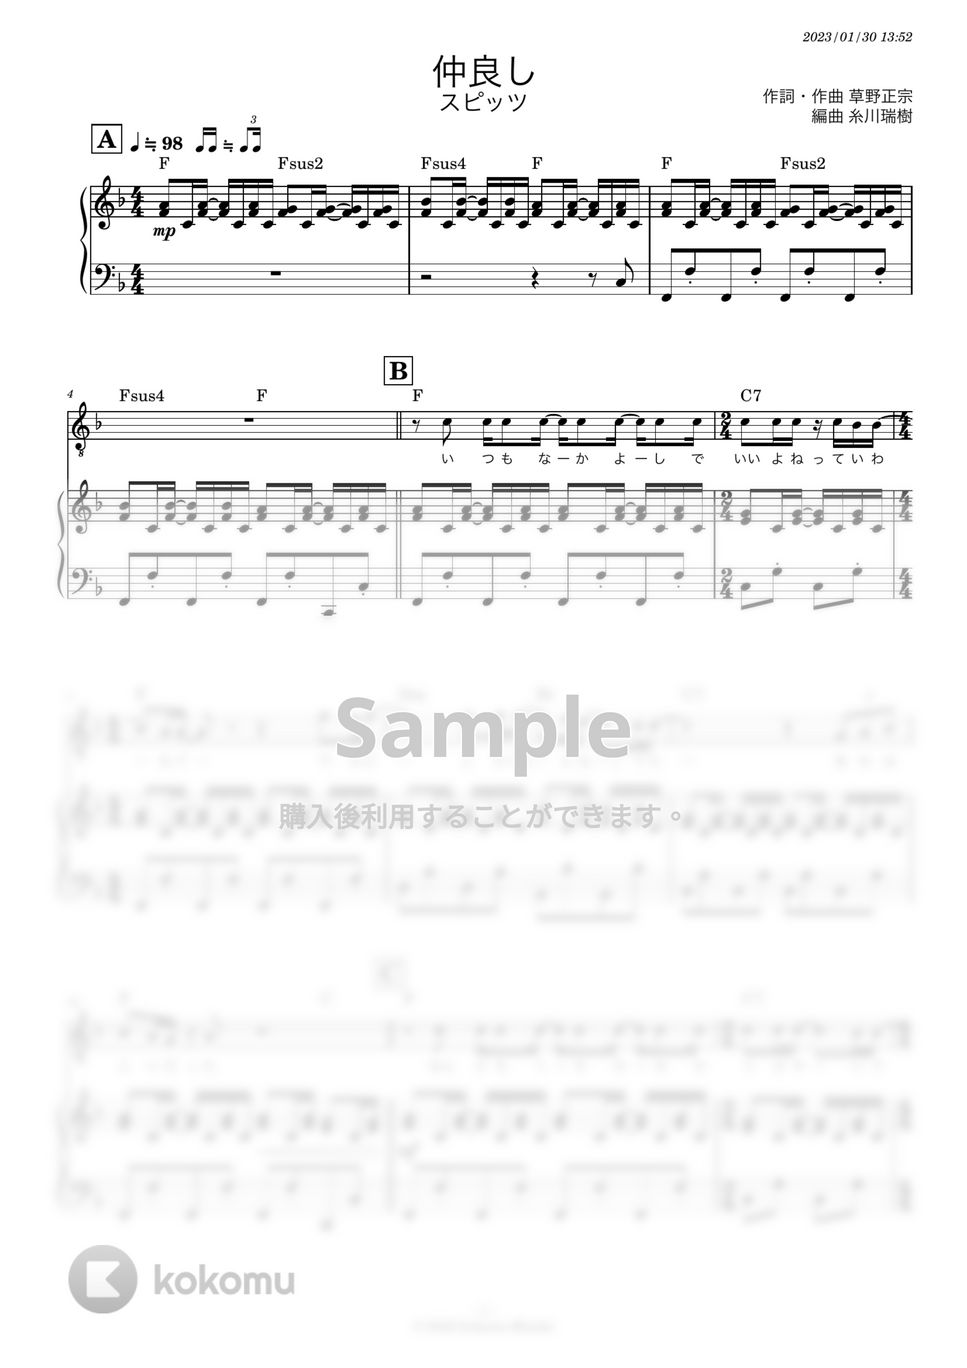 スピッツ - 仲良し (ピアノ伴奏) by 糸川瑞樹